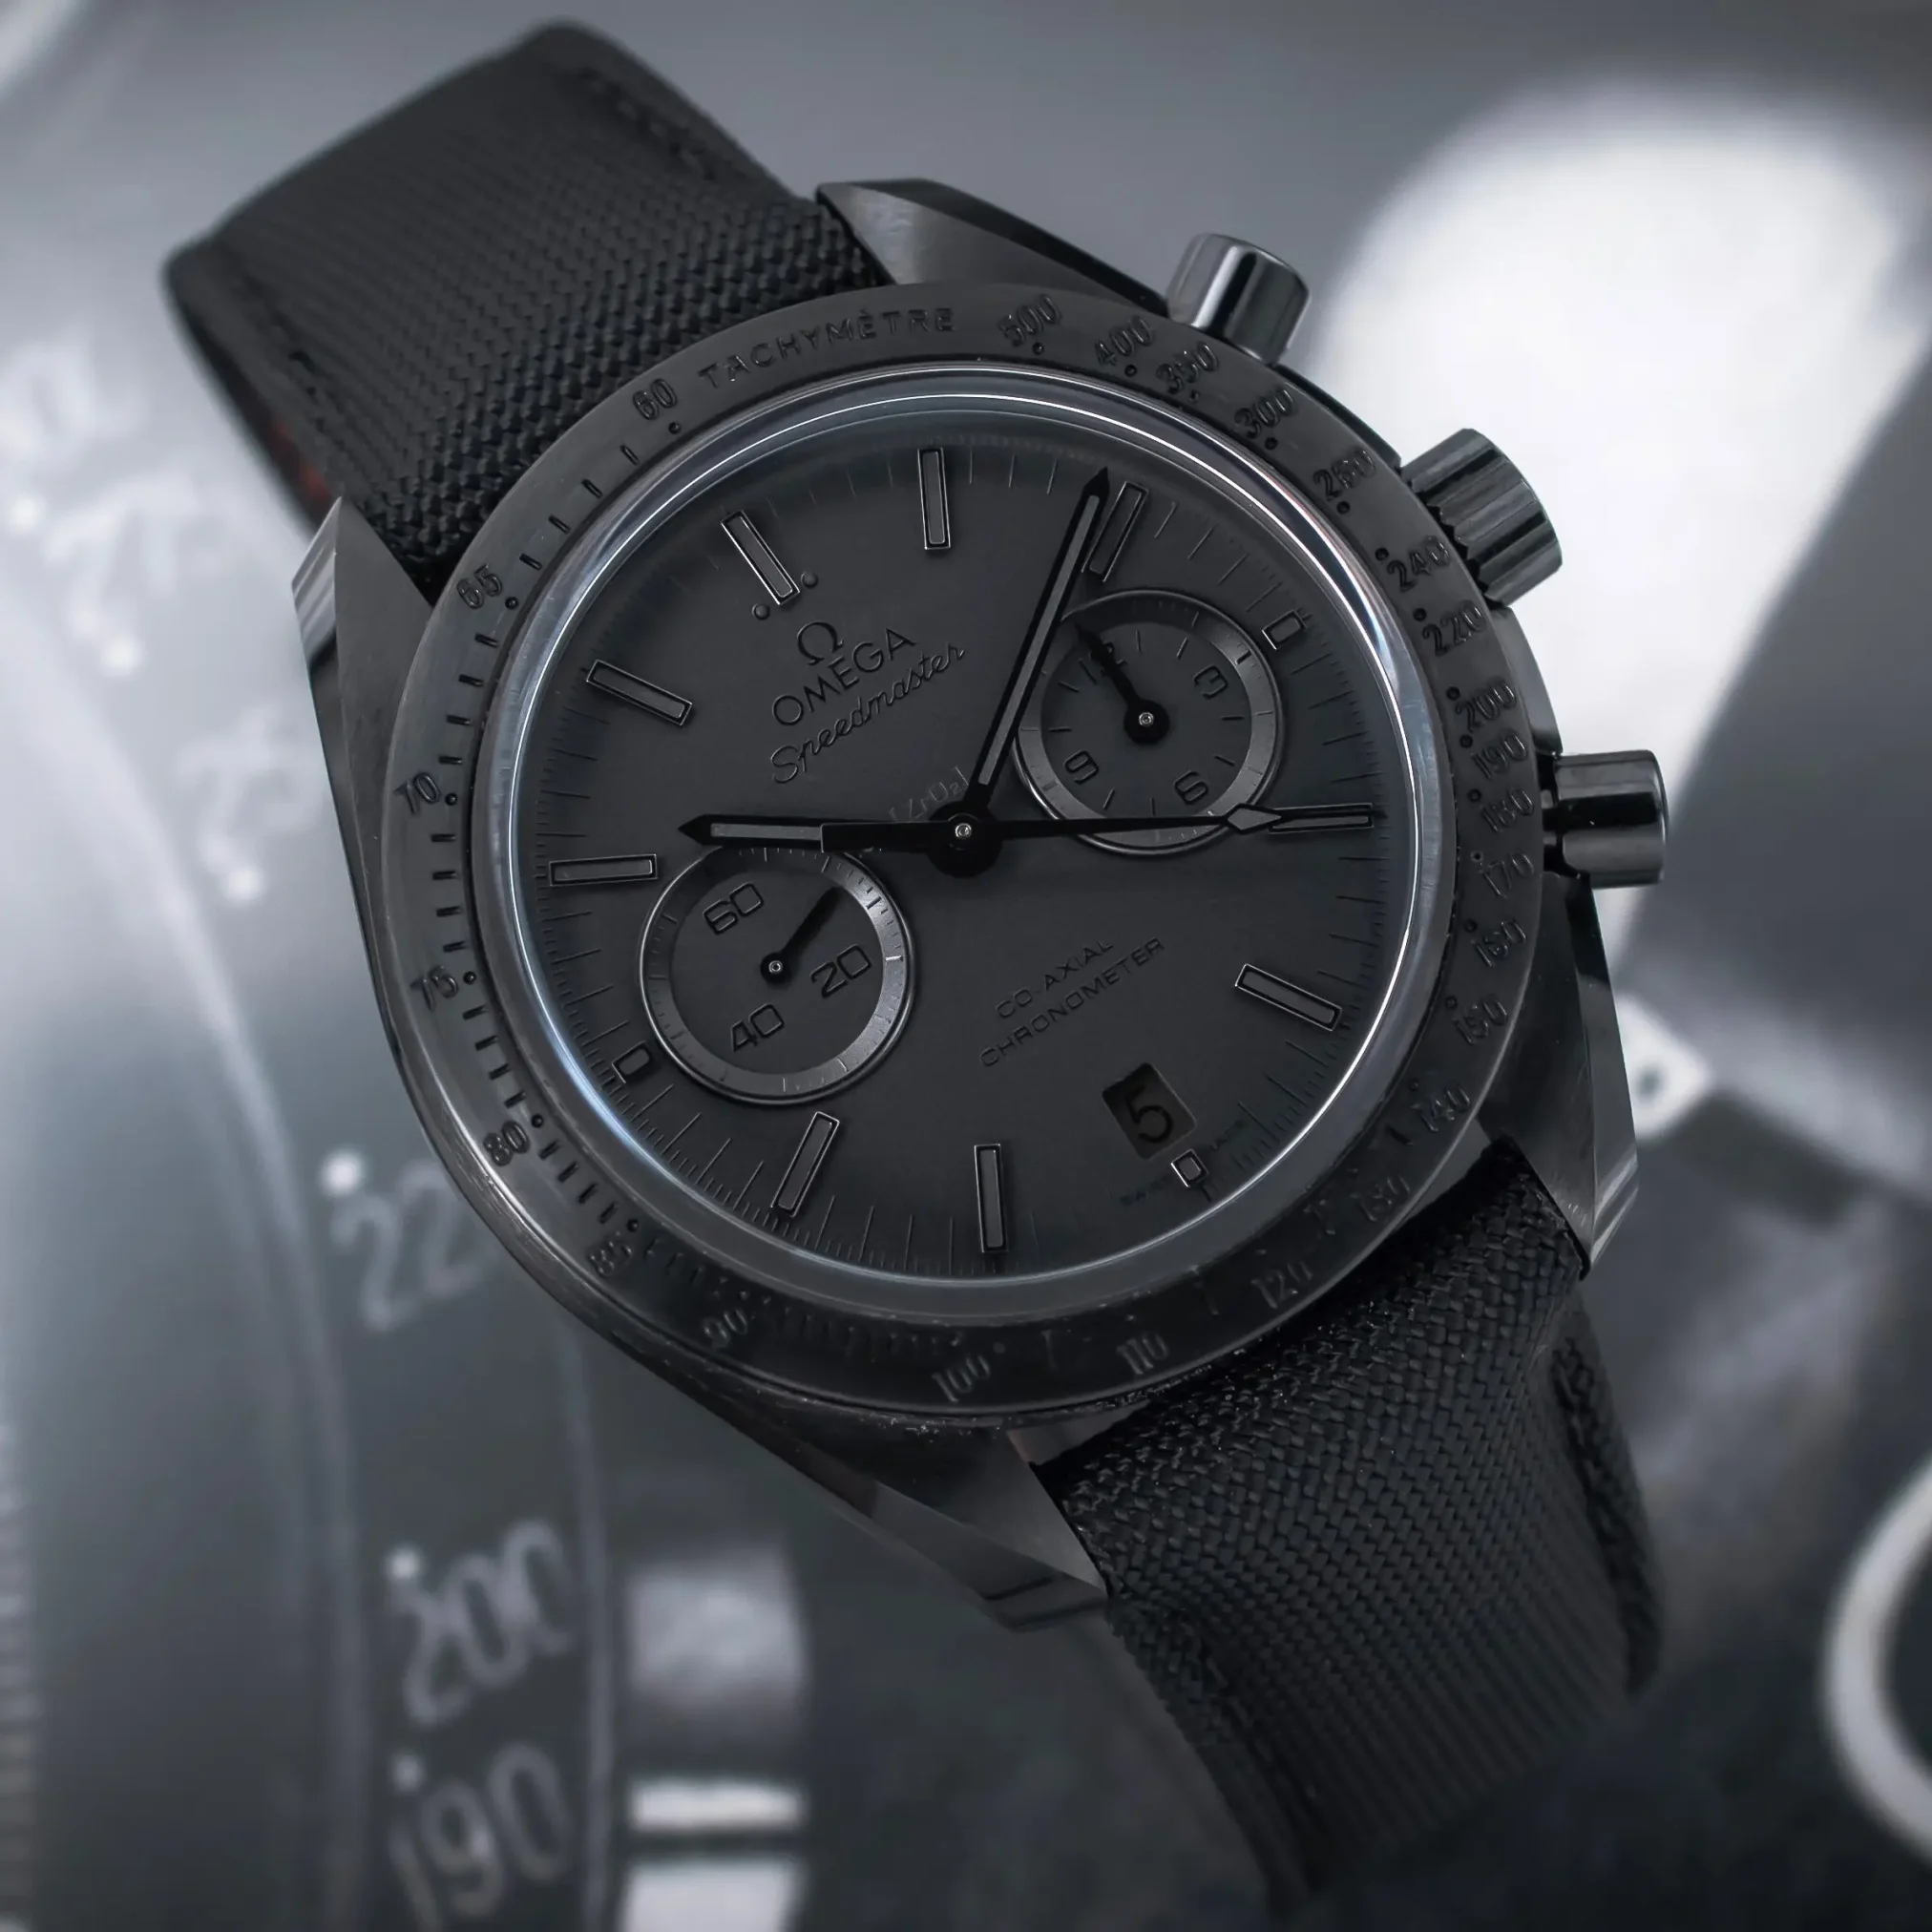 Đồng hồ Omega SpeedMaster Dark Side Of The Moon 311.92.44.51.01.00 mặt số màu đen. Dây đeo bằng vải. Thân vỏ bằng ceramic.